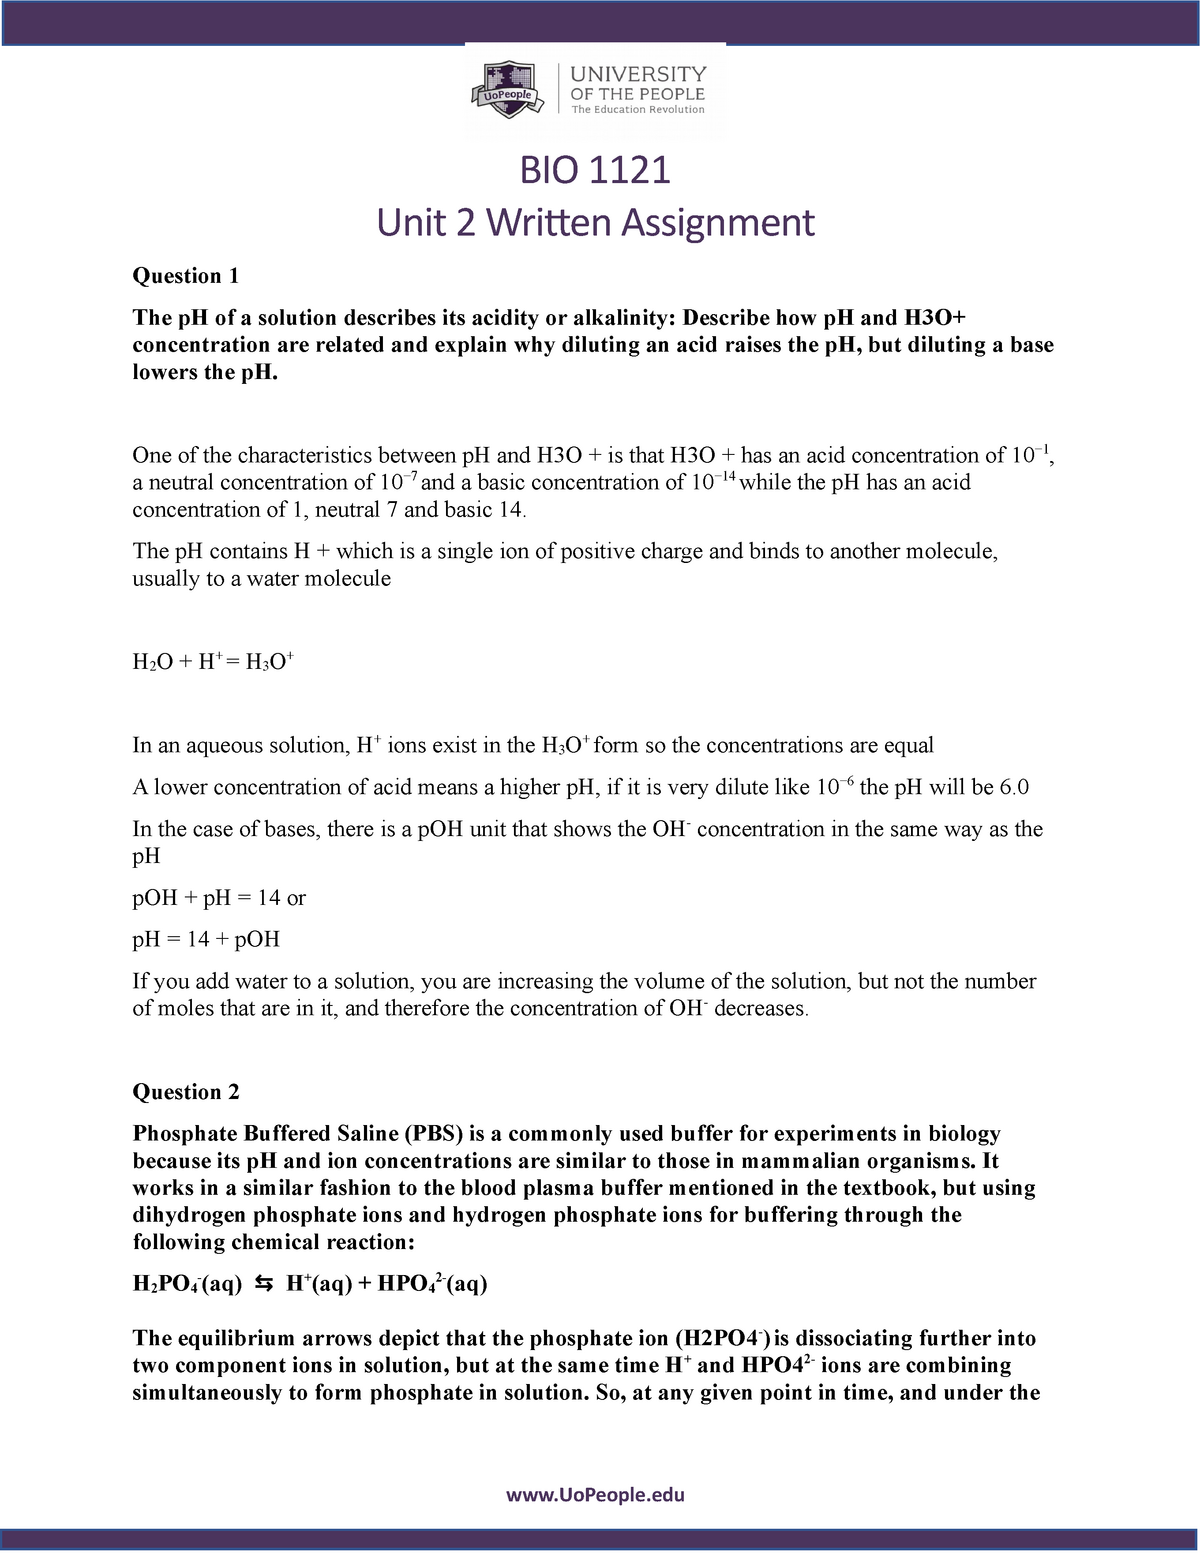 biol 1121 written assignment unit 2